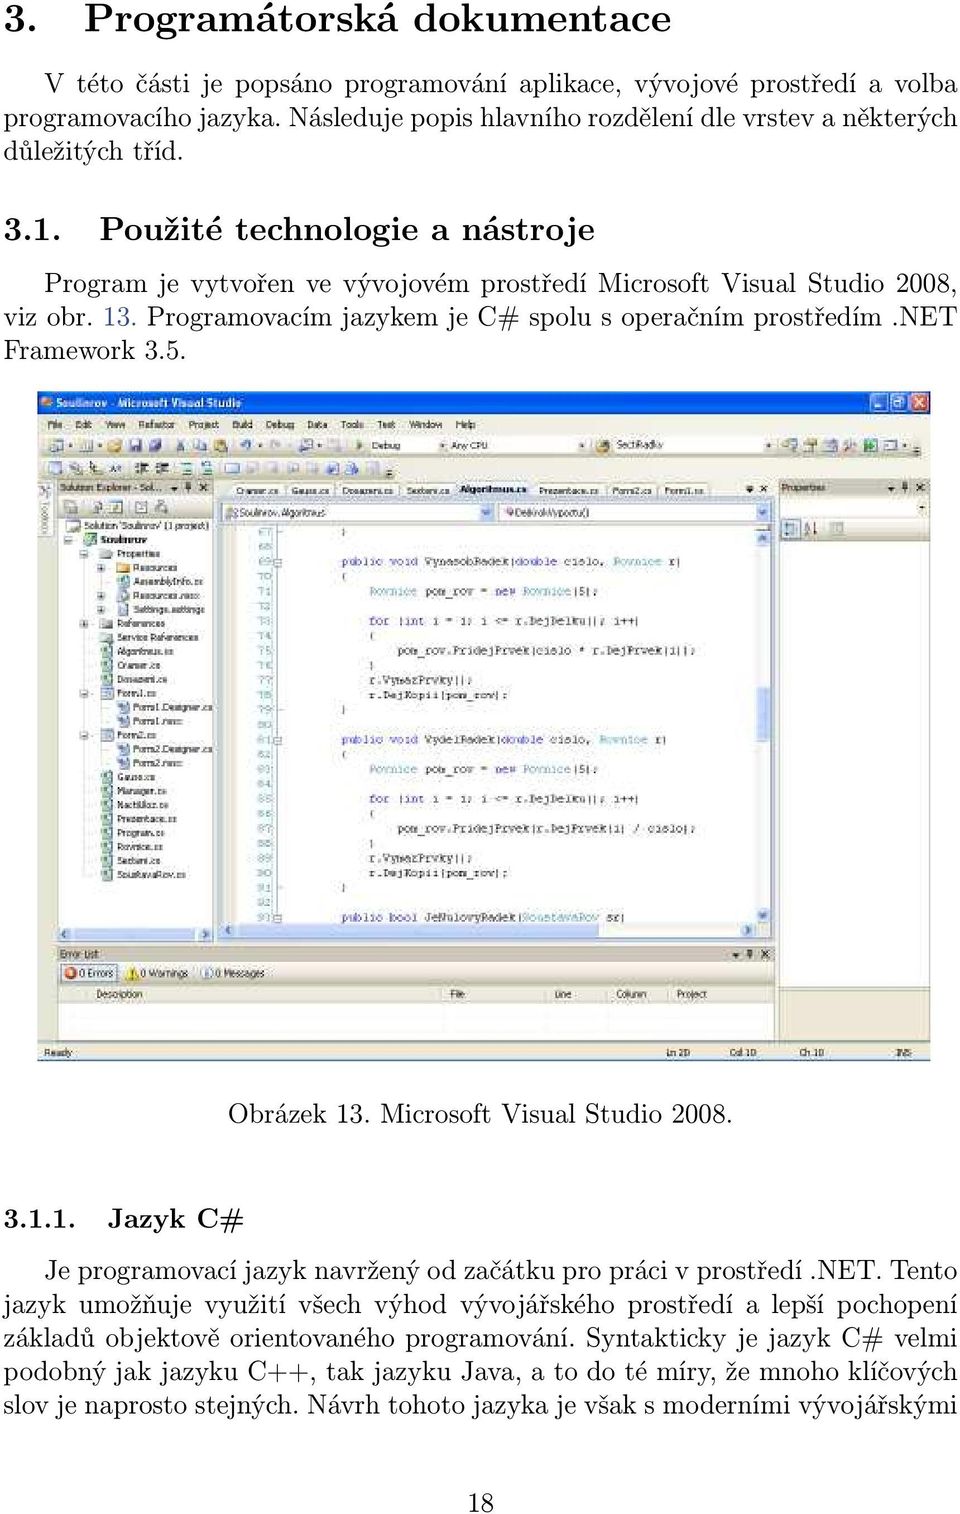 Programovacím jazykem je C# spolu s operačním prostředím.net Framework 3.5. Obrázek 13. Microsoft Visual Studio 2008. 3.1.1. Jazyk C# Je programovací jazyk navržený od začátku pro práci v prostředí.